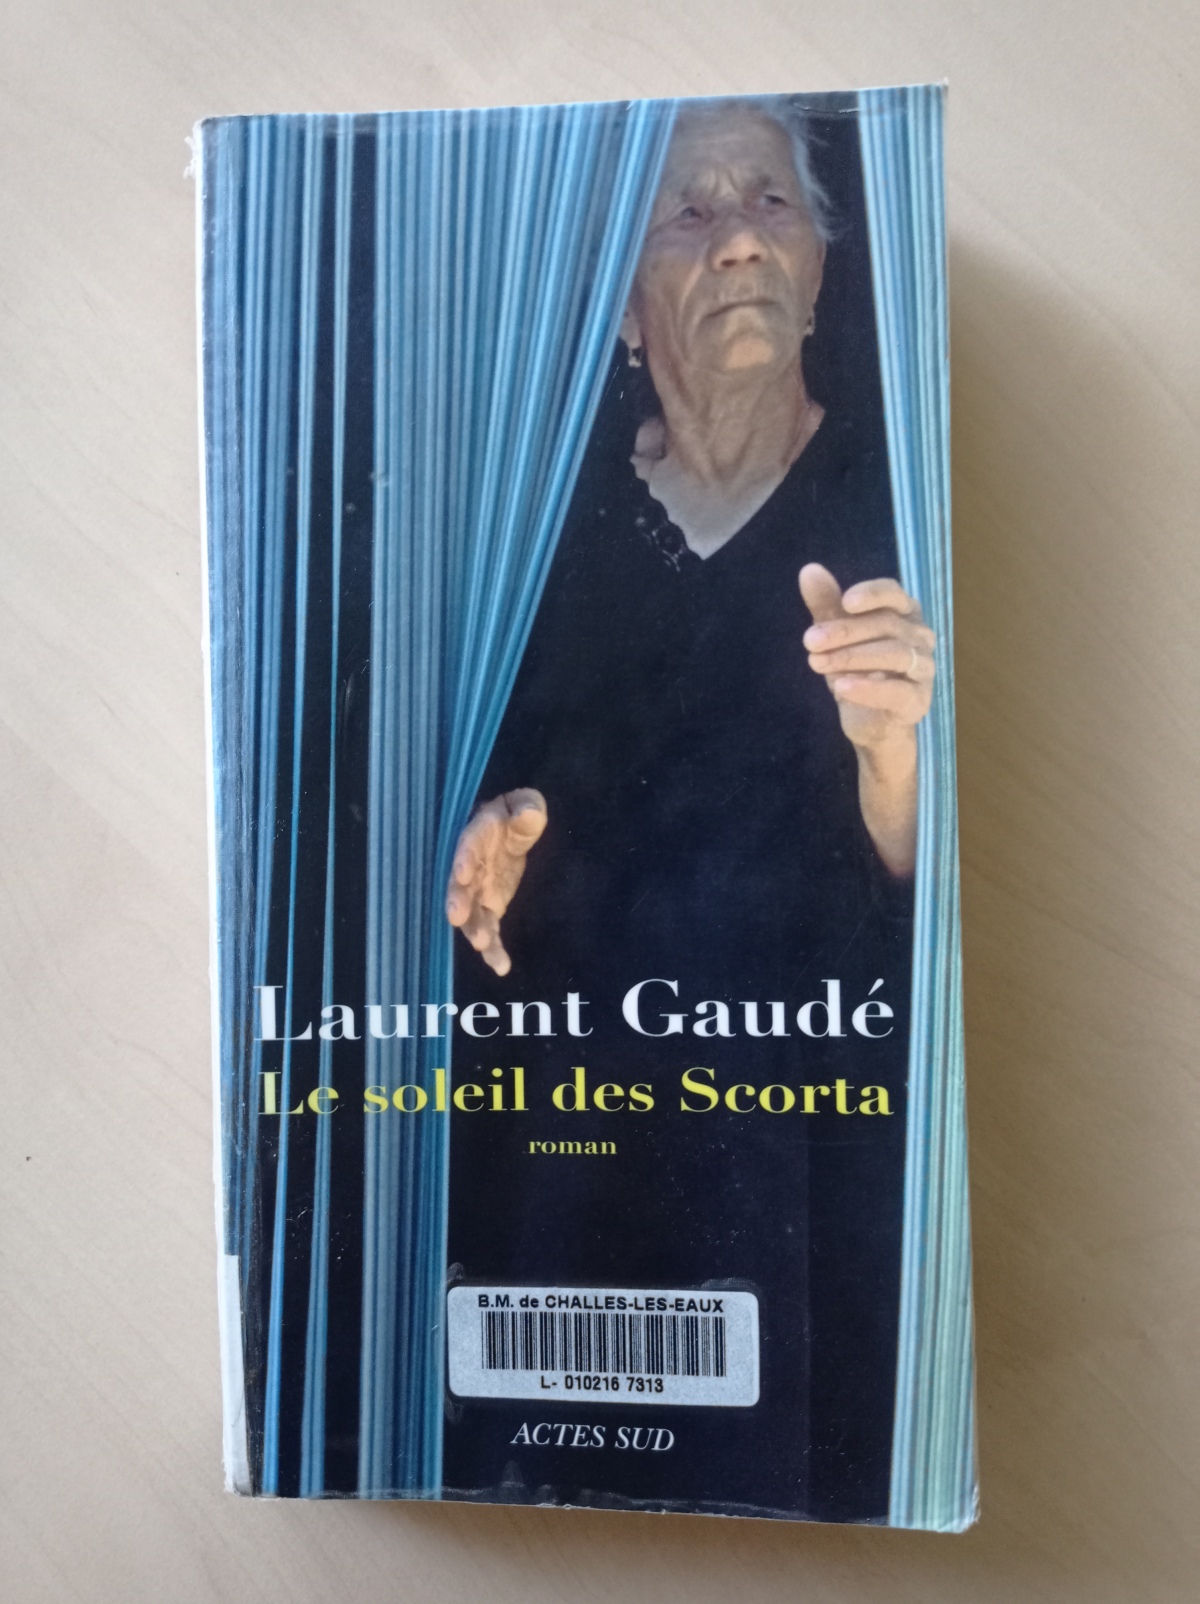 Le soleil des Scorta / Laurent Gaudé